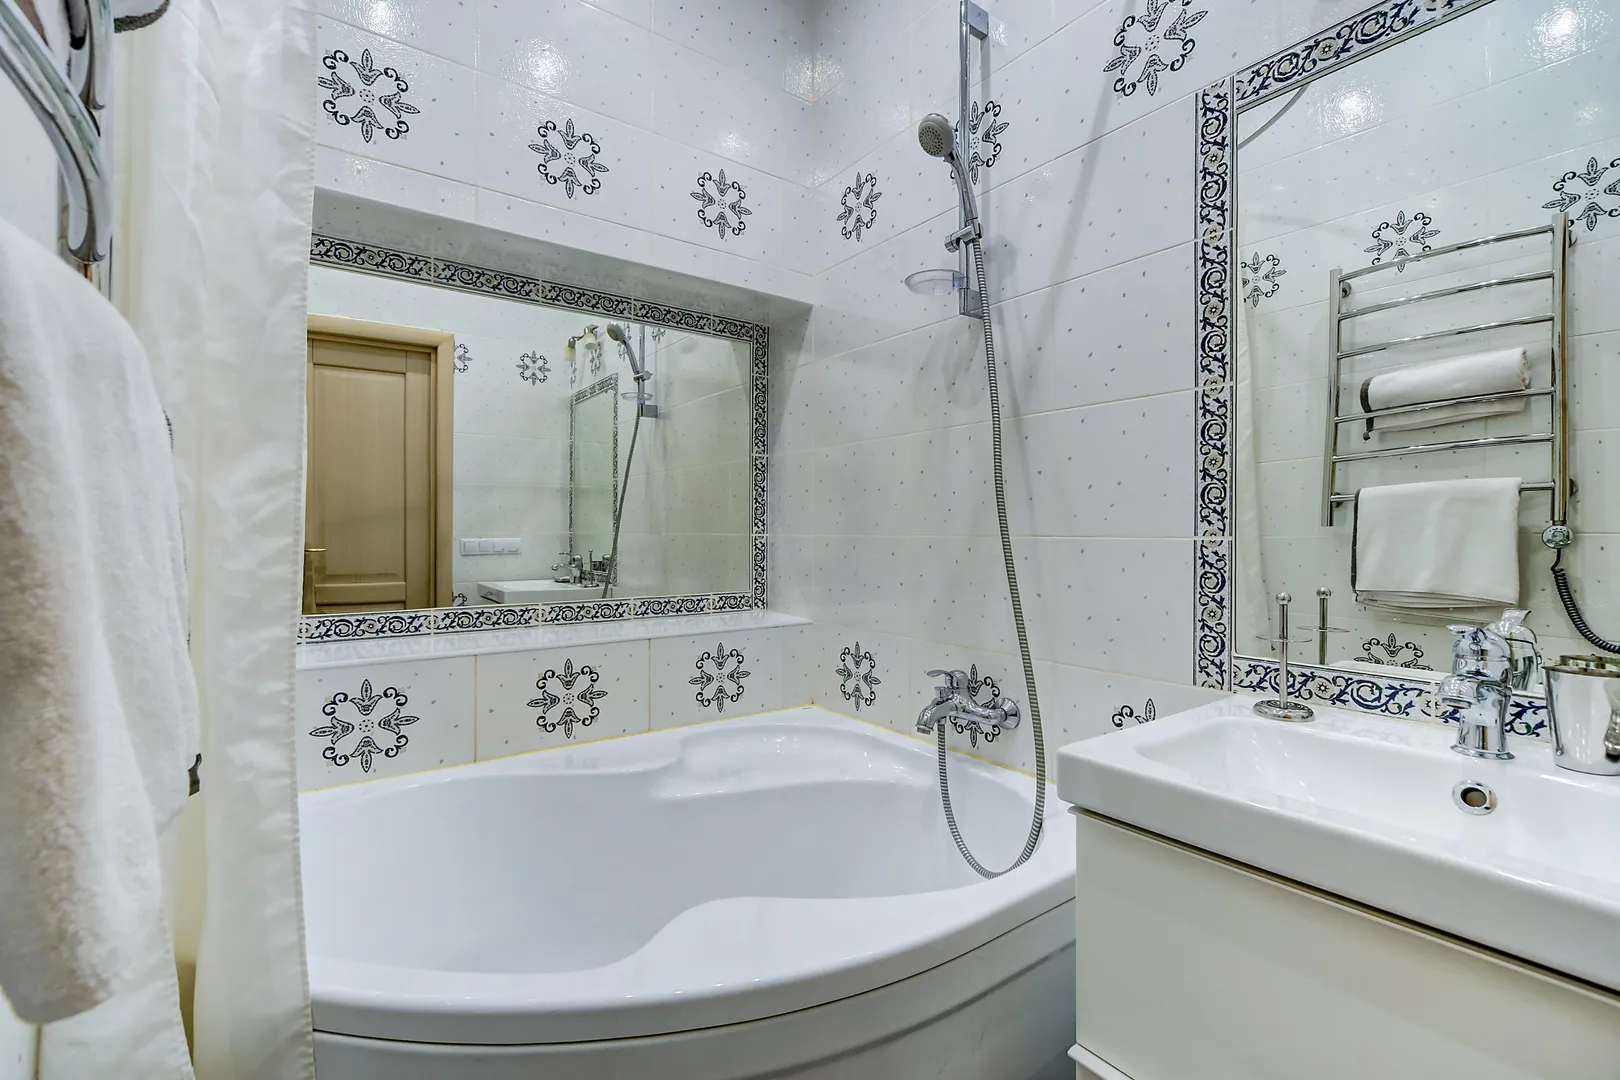 Ванная комната с плиткой в византийском стиле. На электричесом полотенцесушителе всегда можно быстро высушить бельё